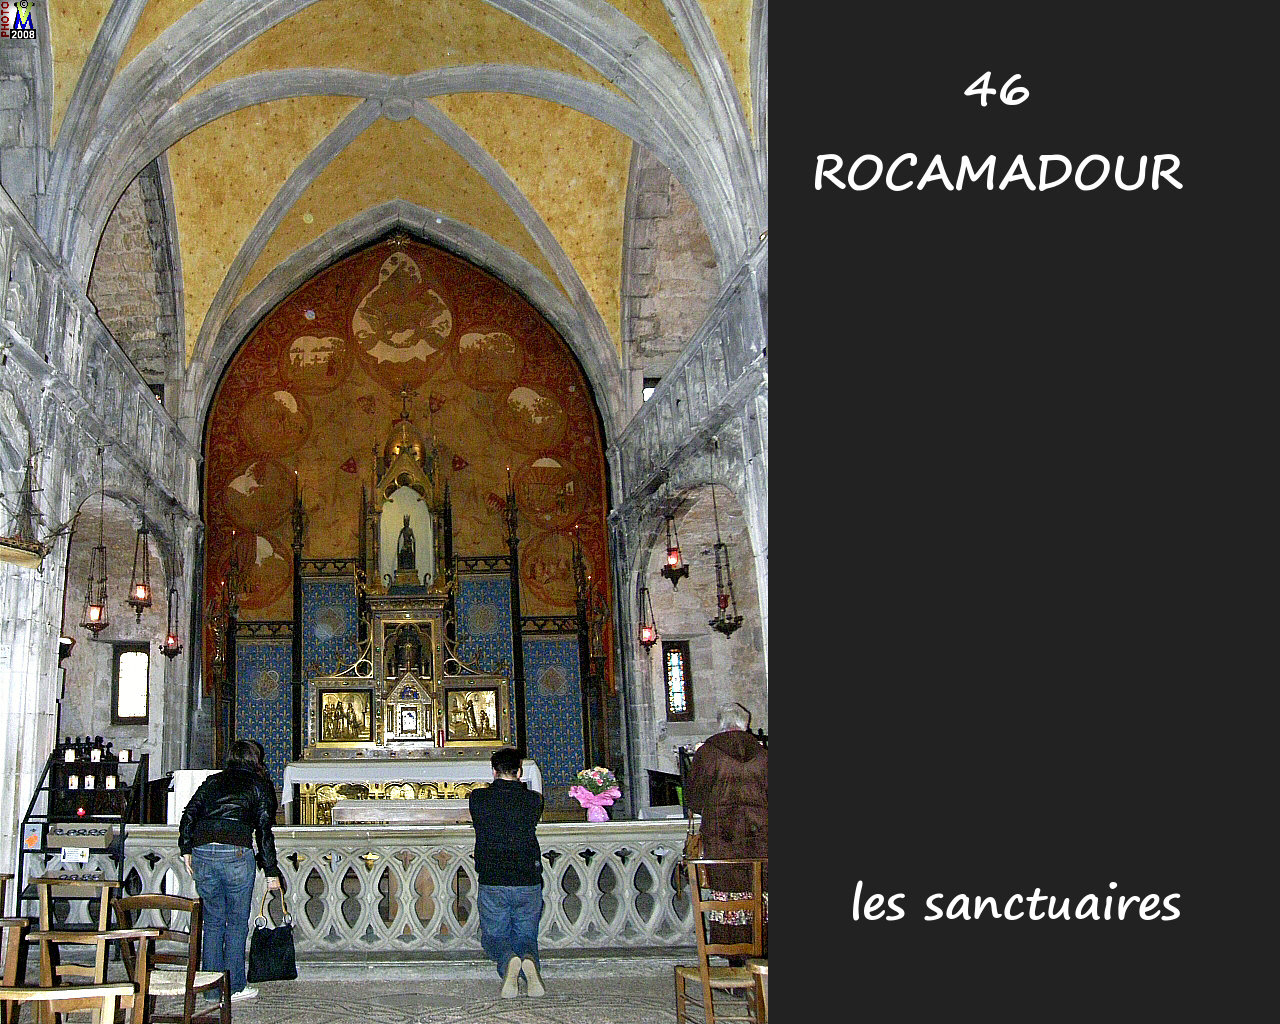 46ROCAMADOUR_sanctuaires_600.jpg